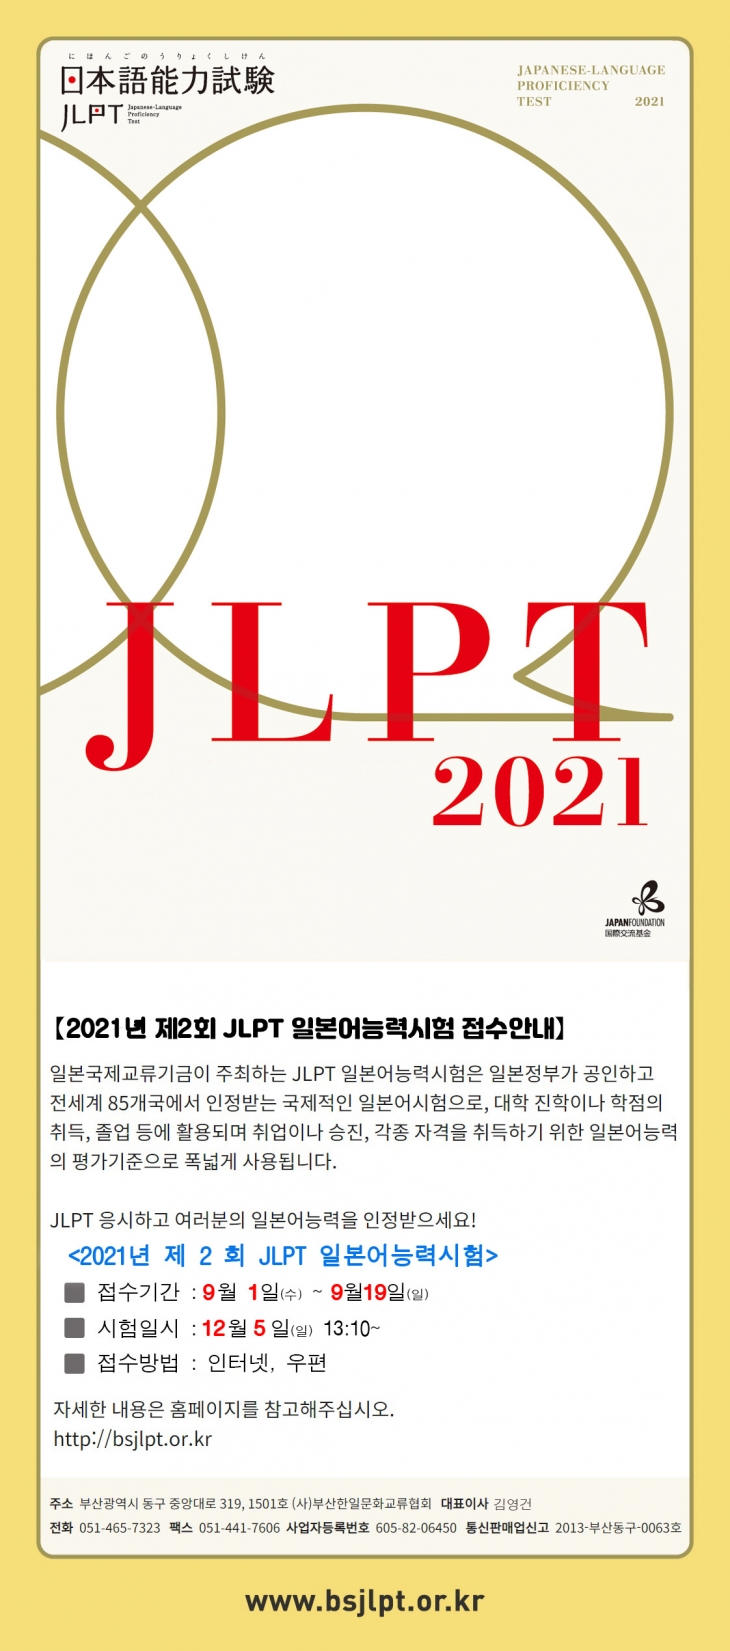 2021년 제2회 JLPT 일본어능력시험 실시 안내